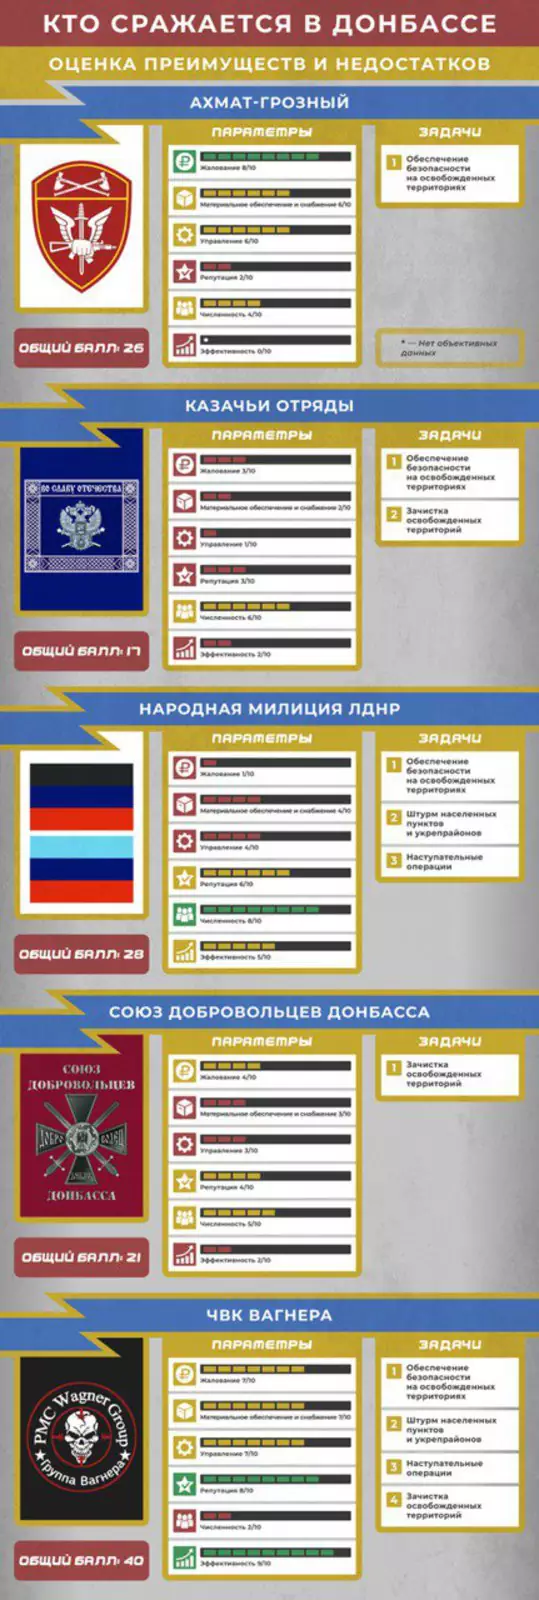 Кто такие русские добровольцы в Донбассе?